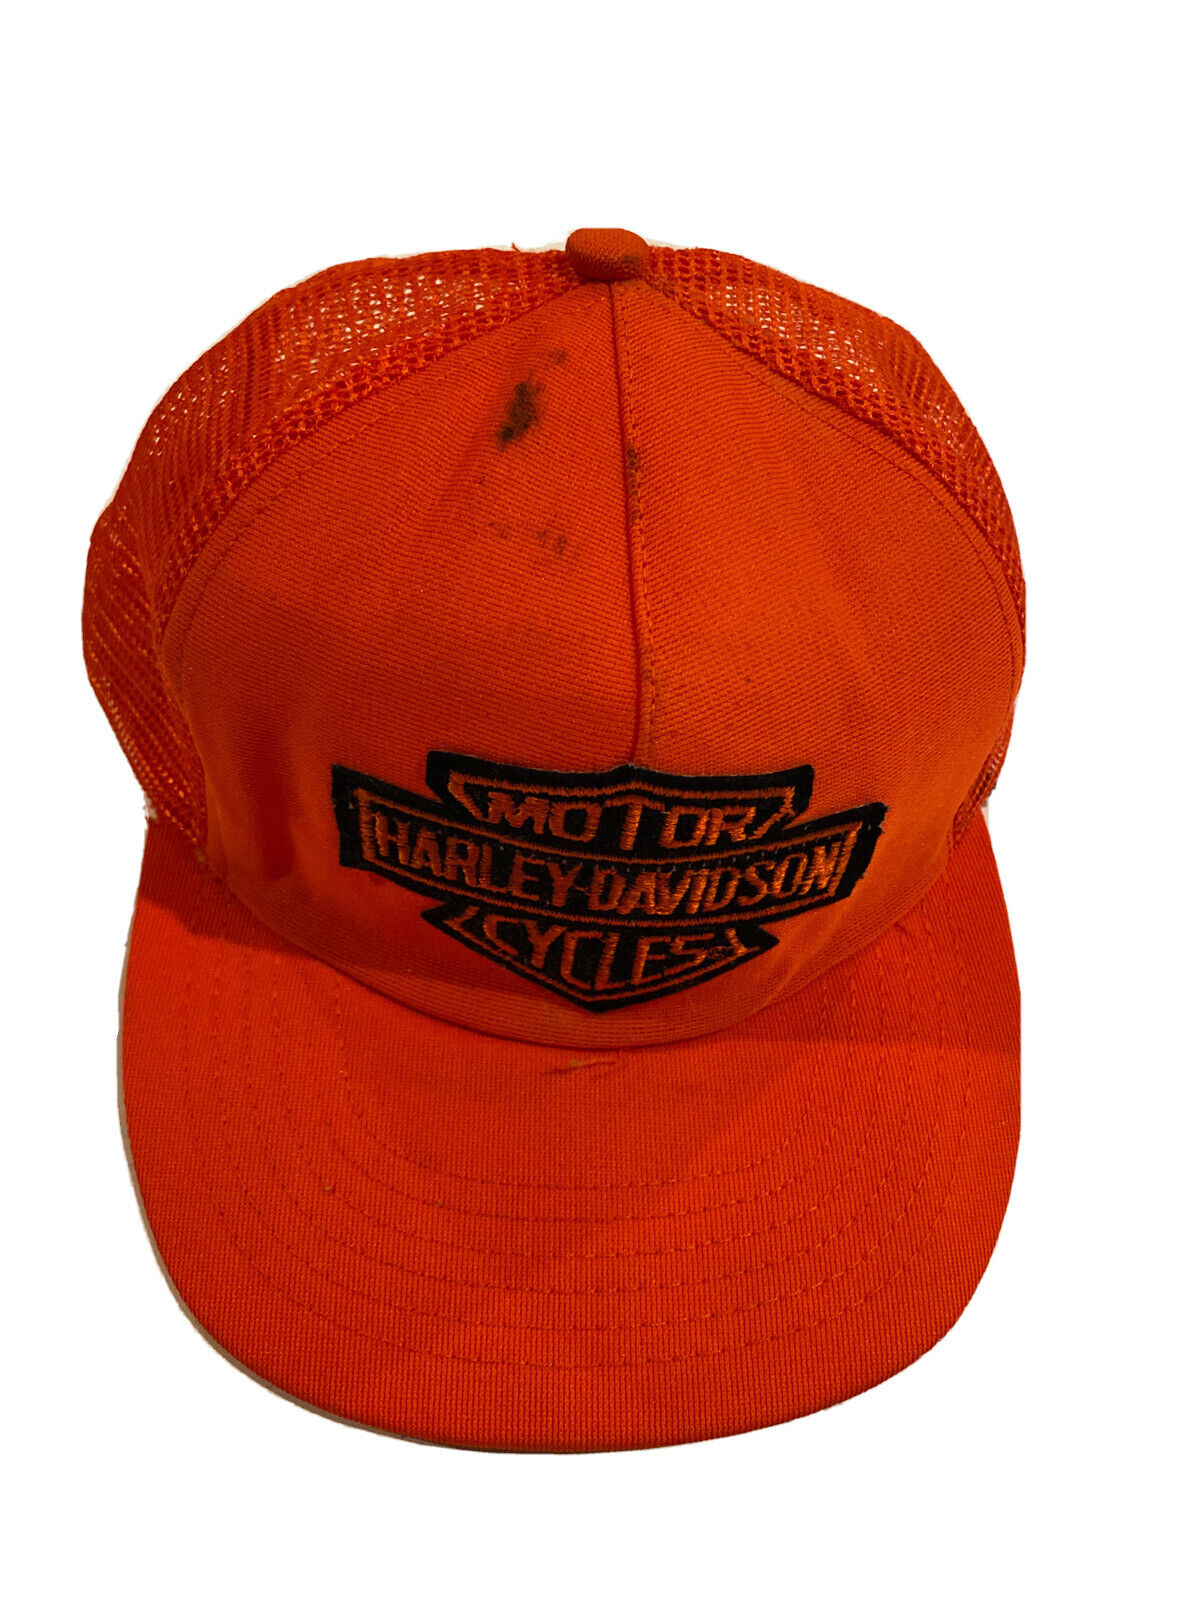 Vintage Harley Davidson Orange snap back cap Made In USA